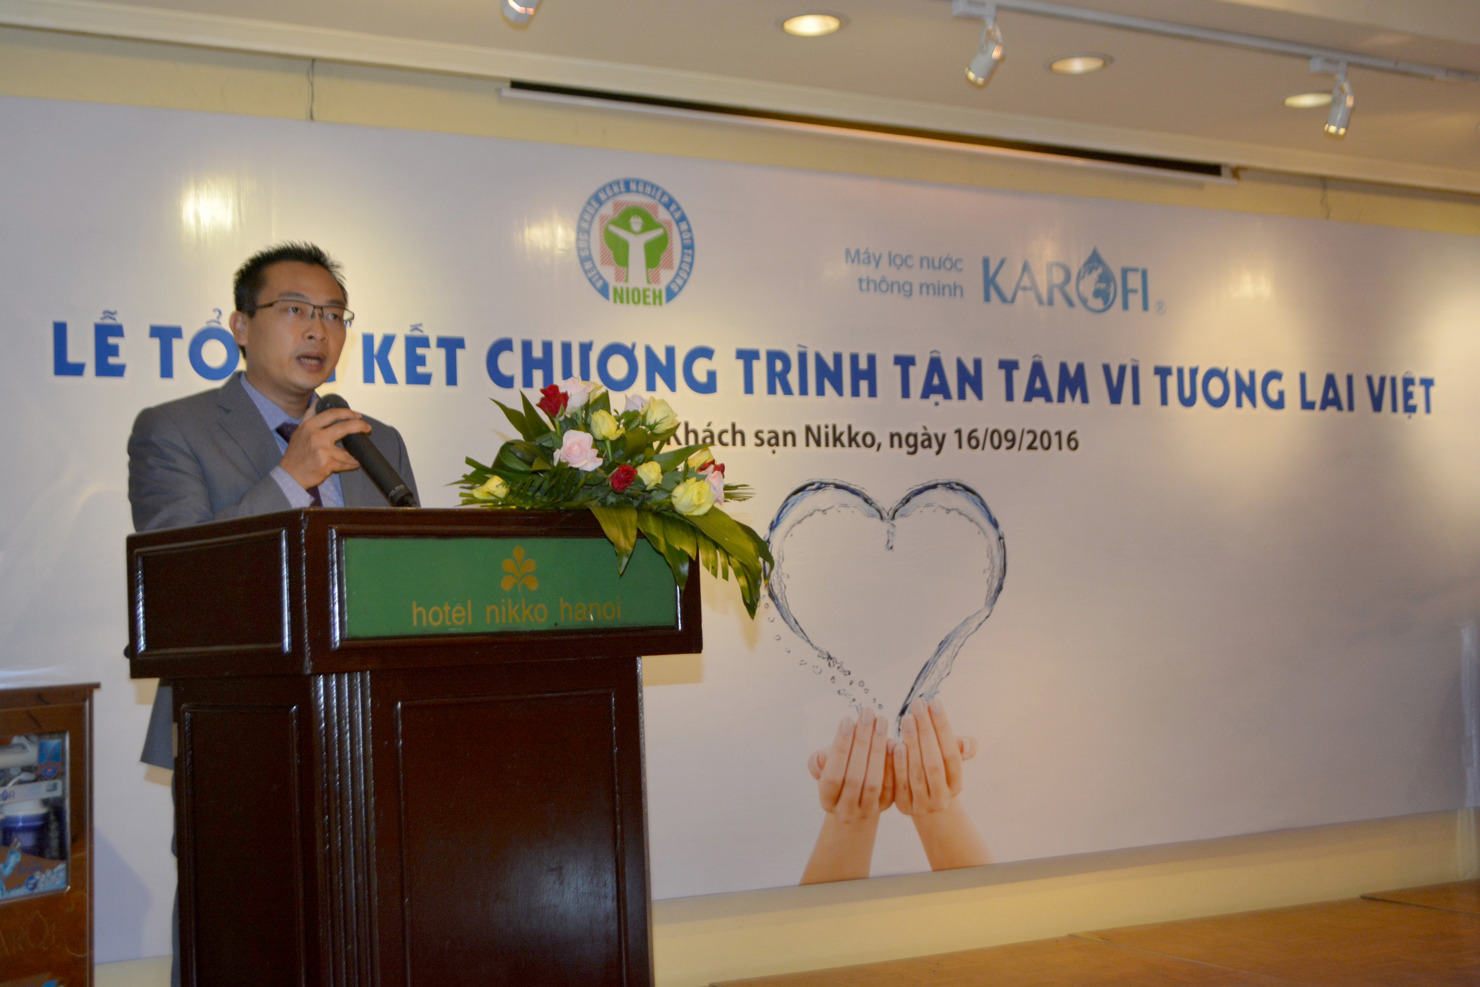 Ông Trần Trung Dũng, Tổng Giám đốc Công ty cổ phần Karofi Việt Nam báo cáo kết quả của hành trình “Tận tâm vì tương lai Việt”.